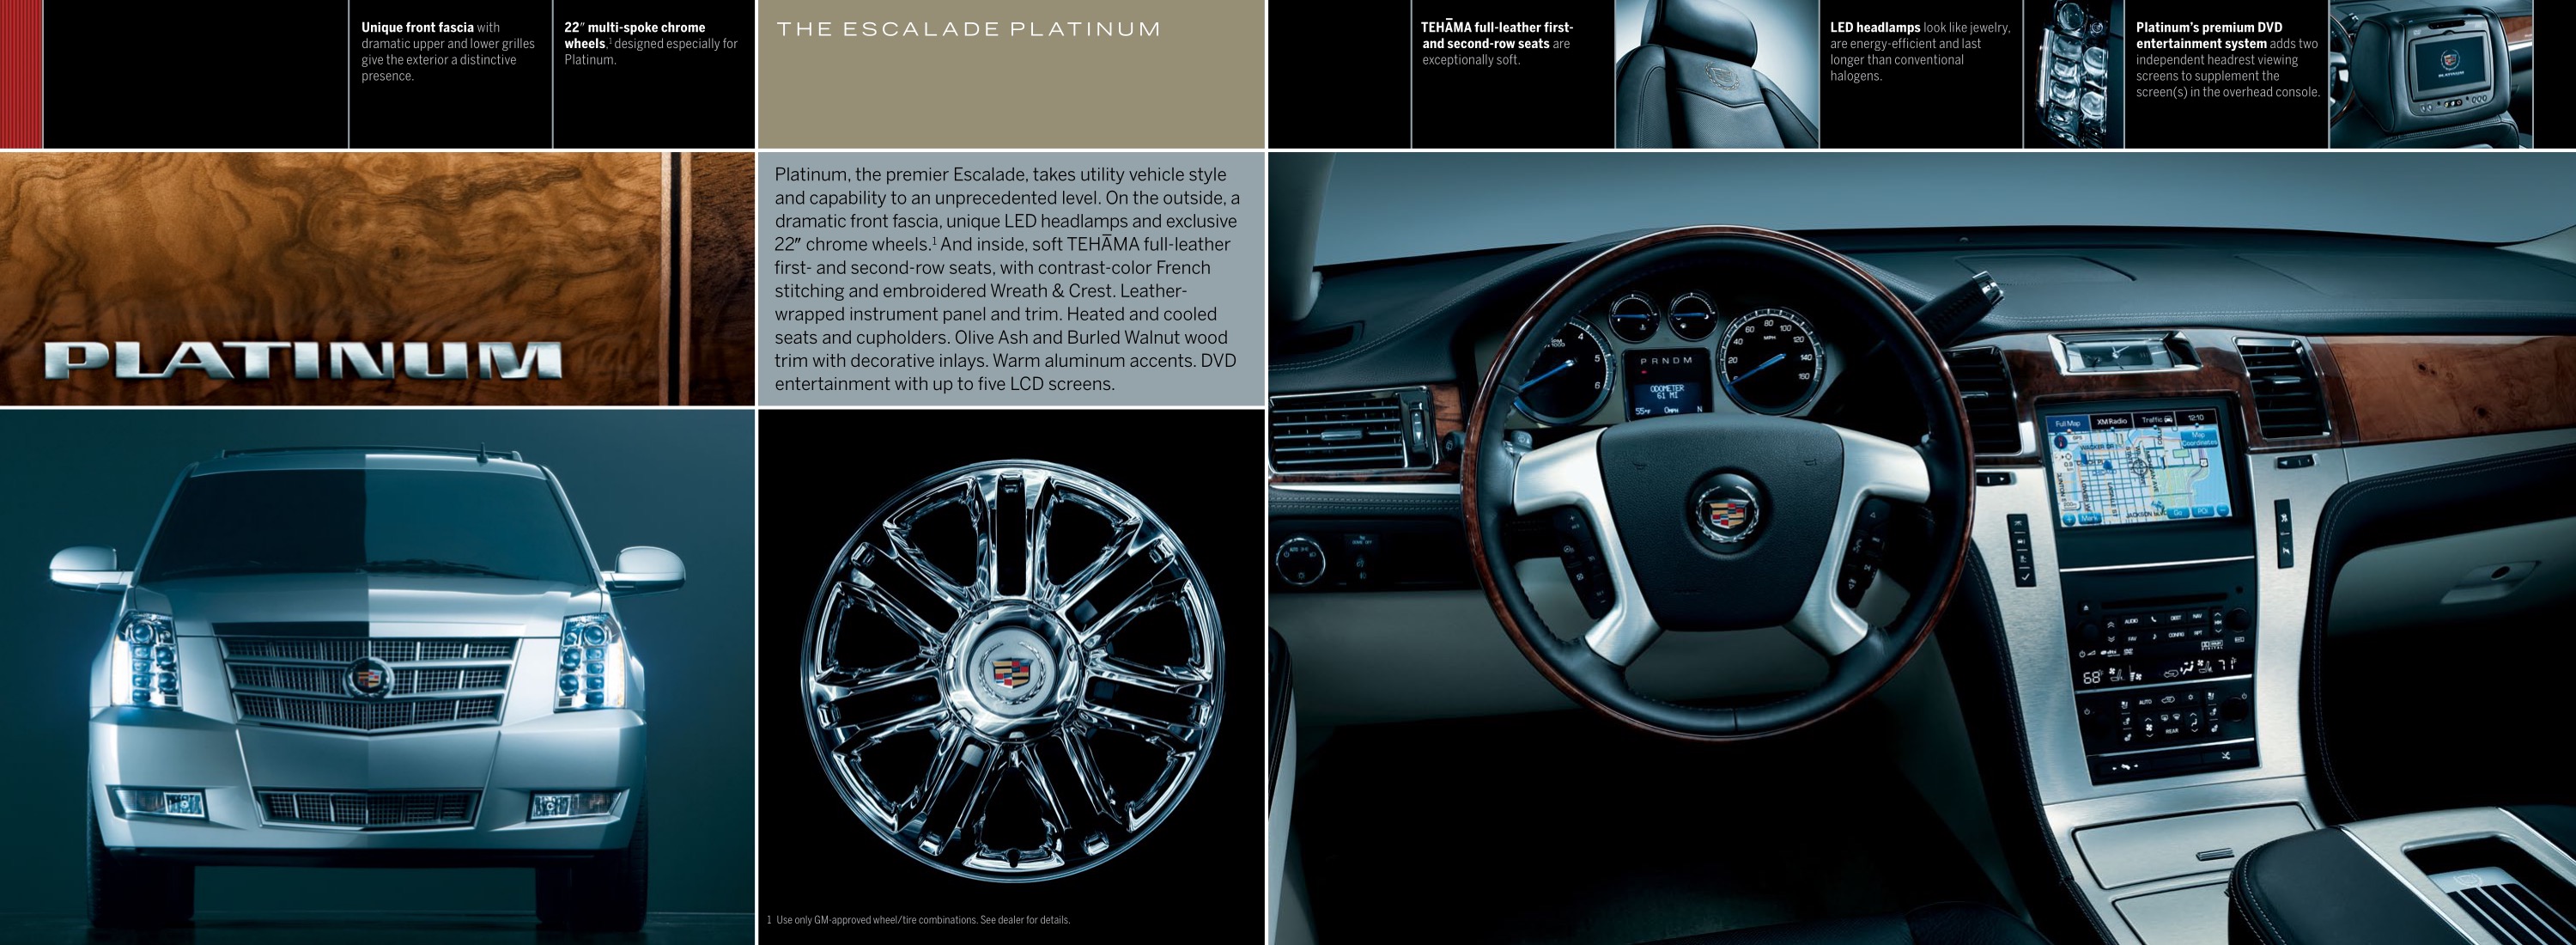 2011 Cadillac Escalade Brochure Page 9